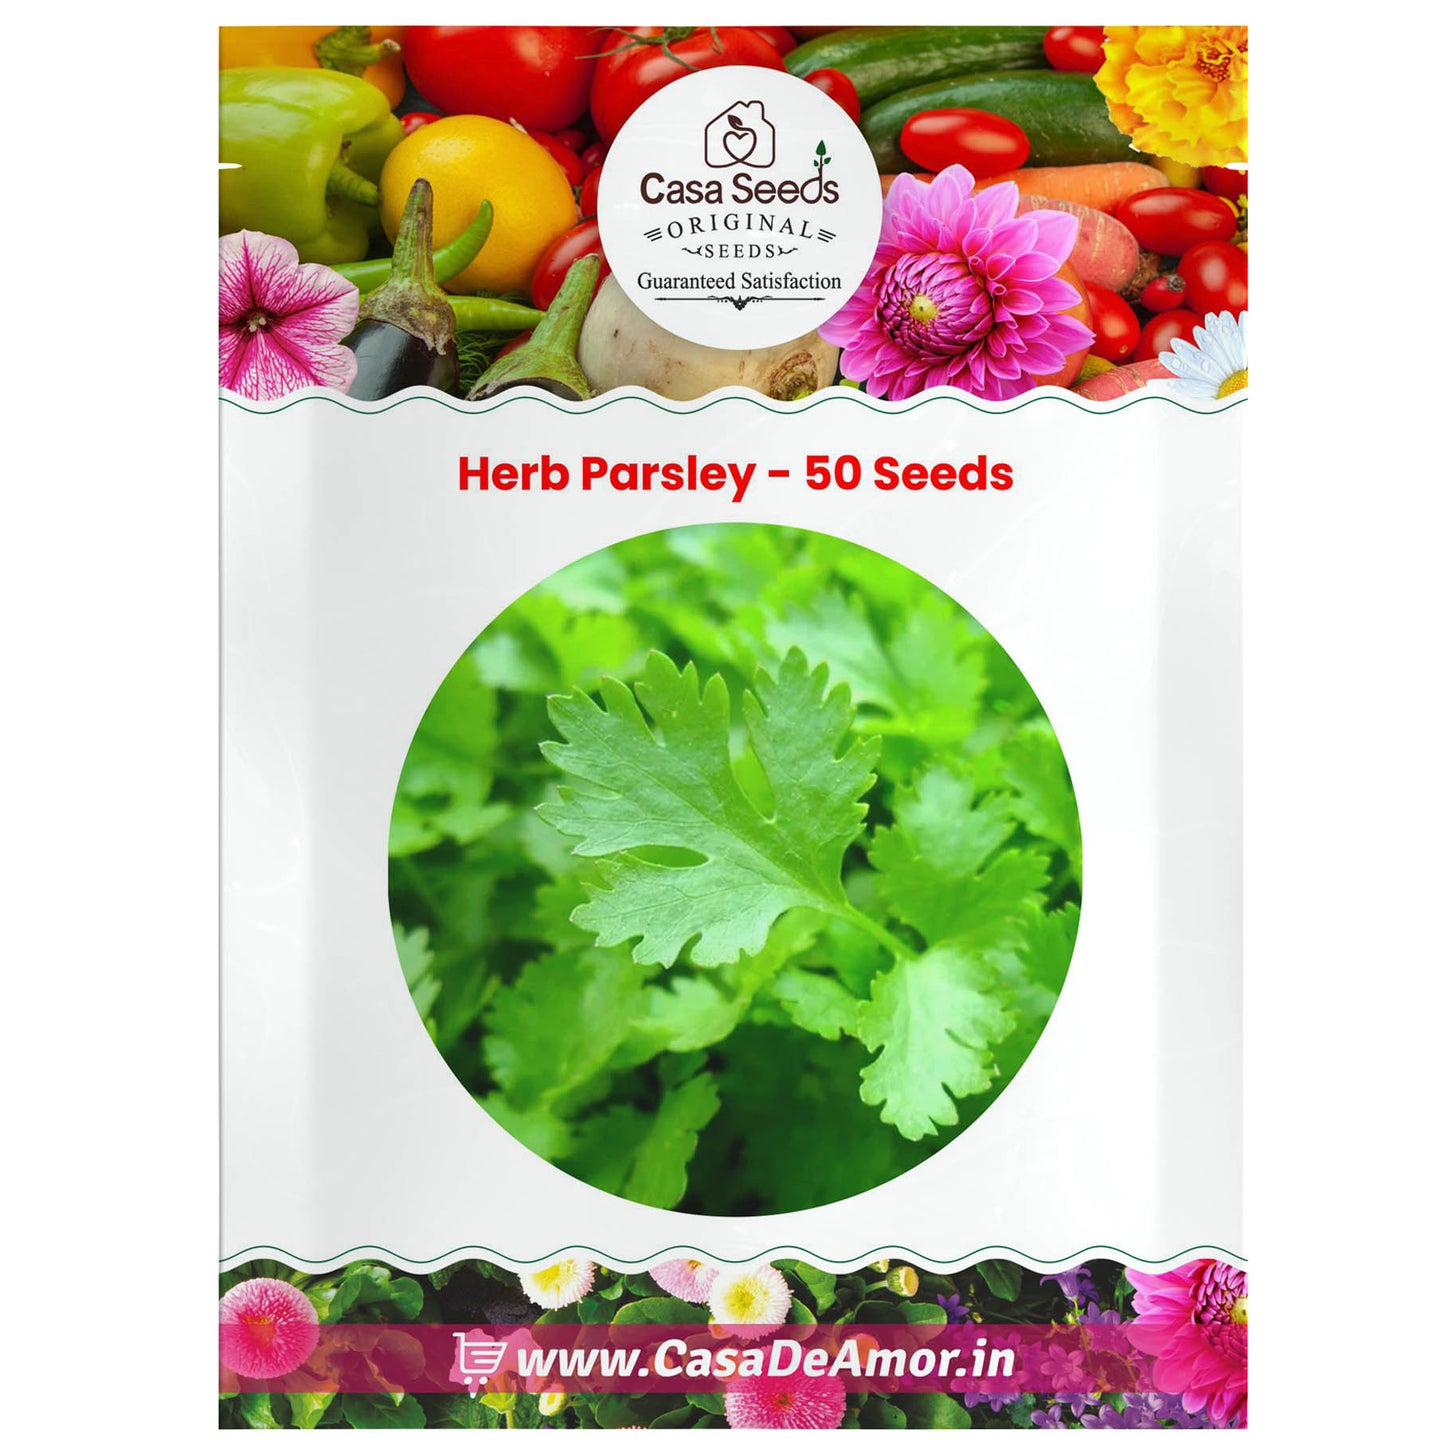 Herb Parsley - 50 Seeds